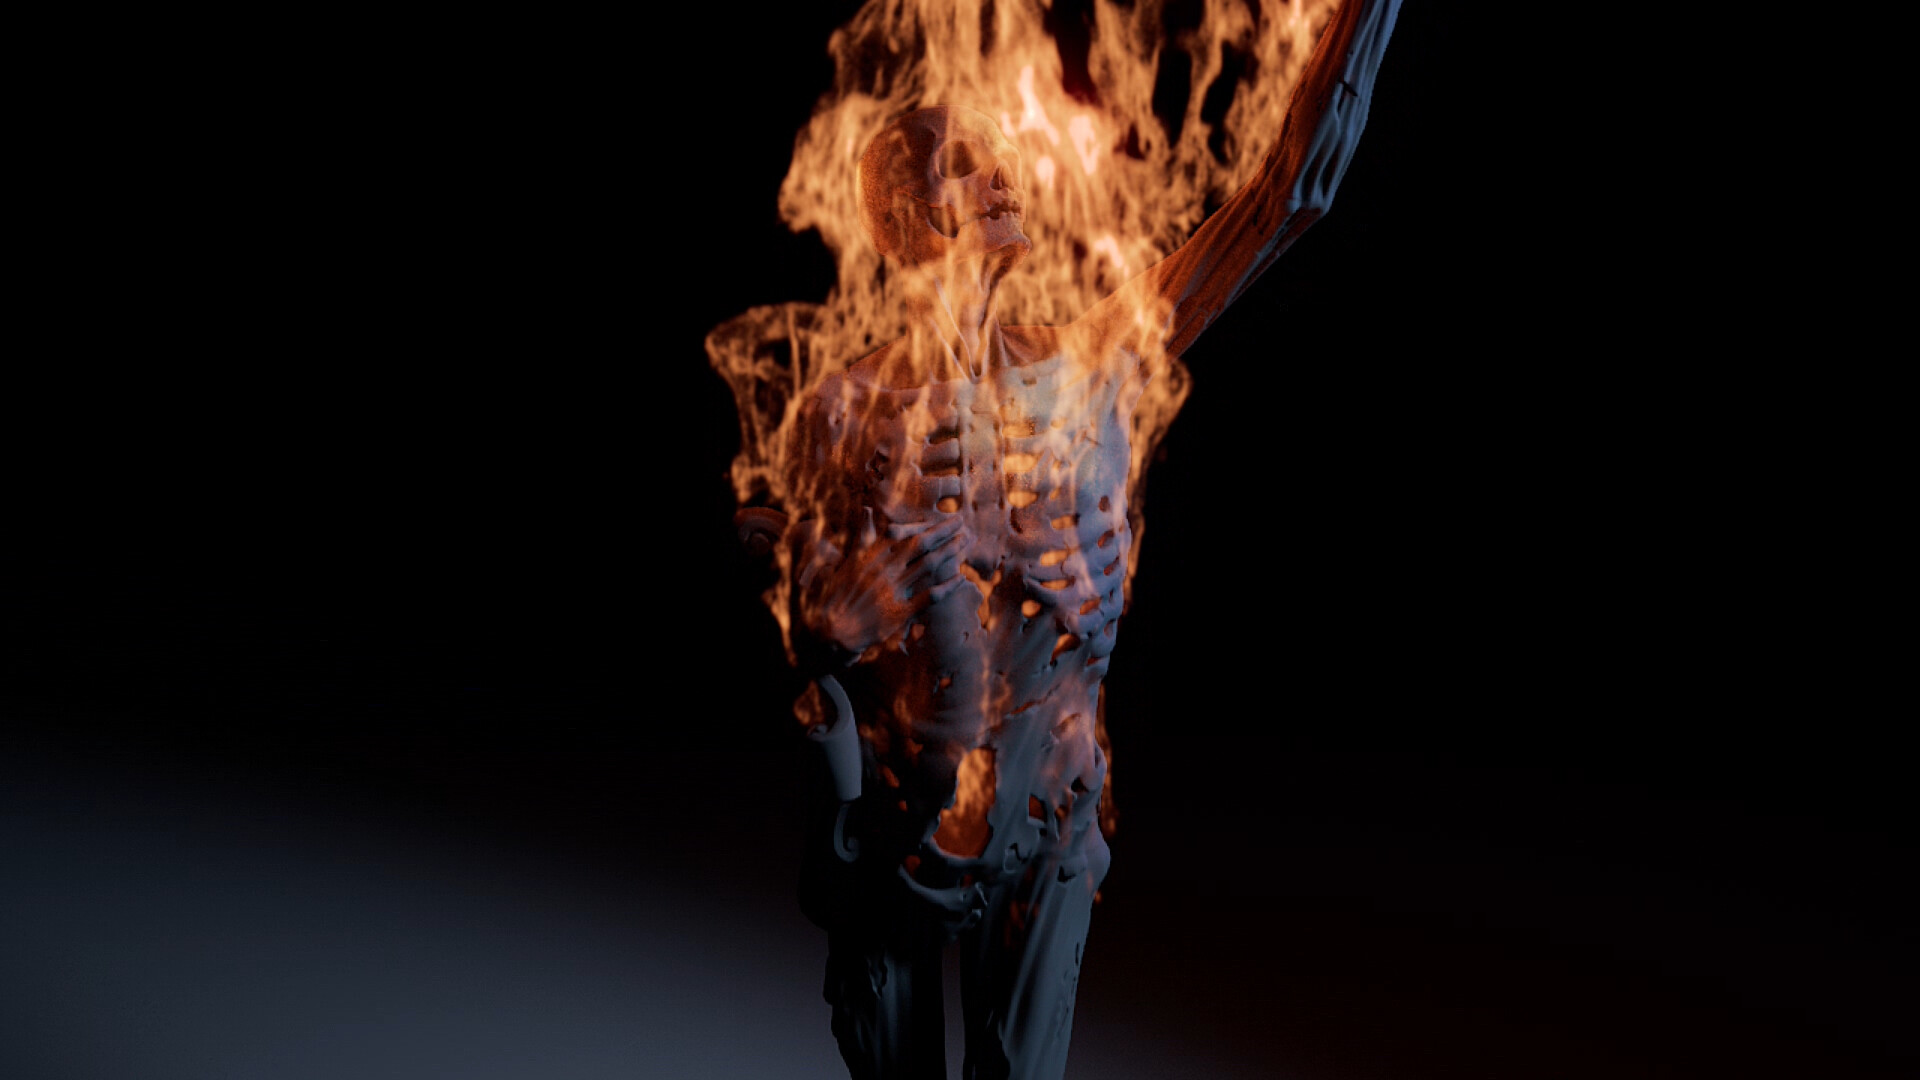 ArtStation - Burning Statue